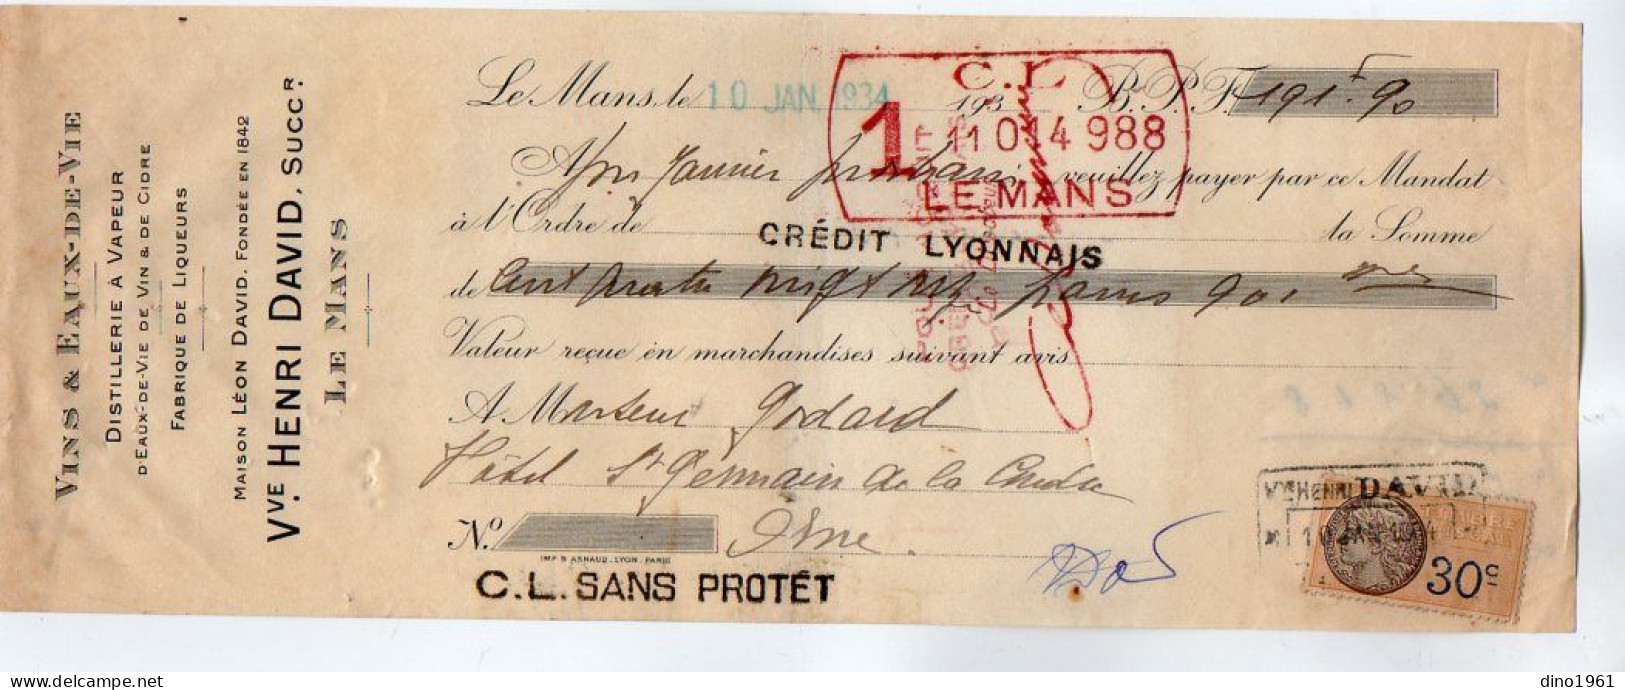 VP22.377 - 1934 - Lettre De Change - Vins & Eaux - De - Vie Distillerie à Vapeur Vve Henri DAVID, Succ à LE MANS - Bills Of Exchange